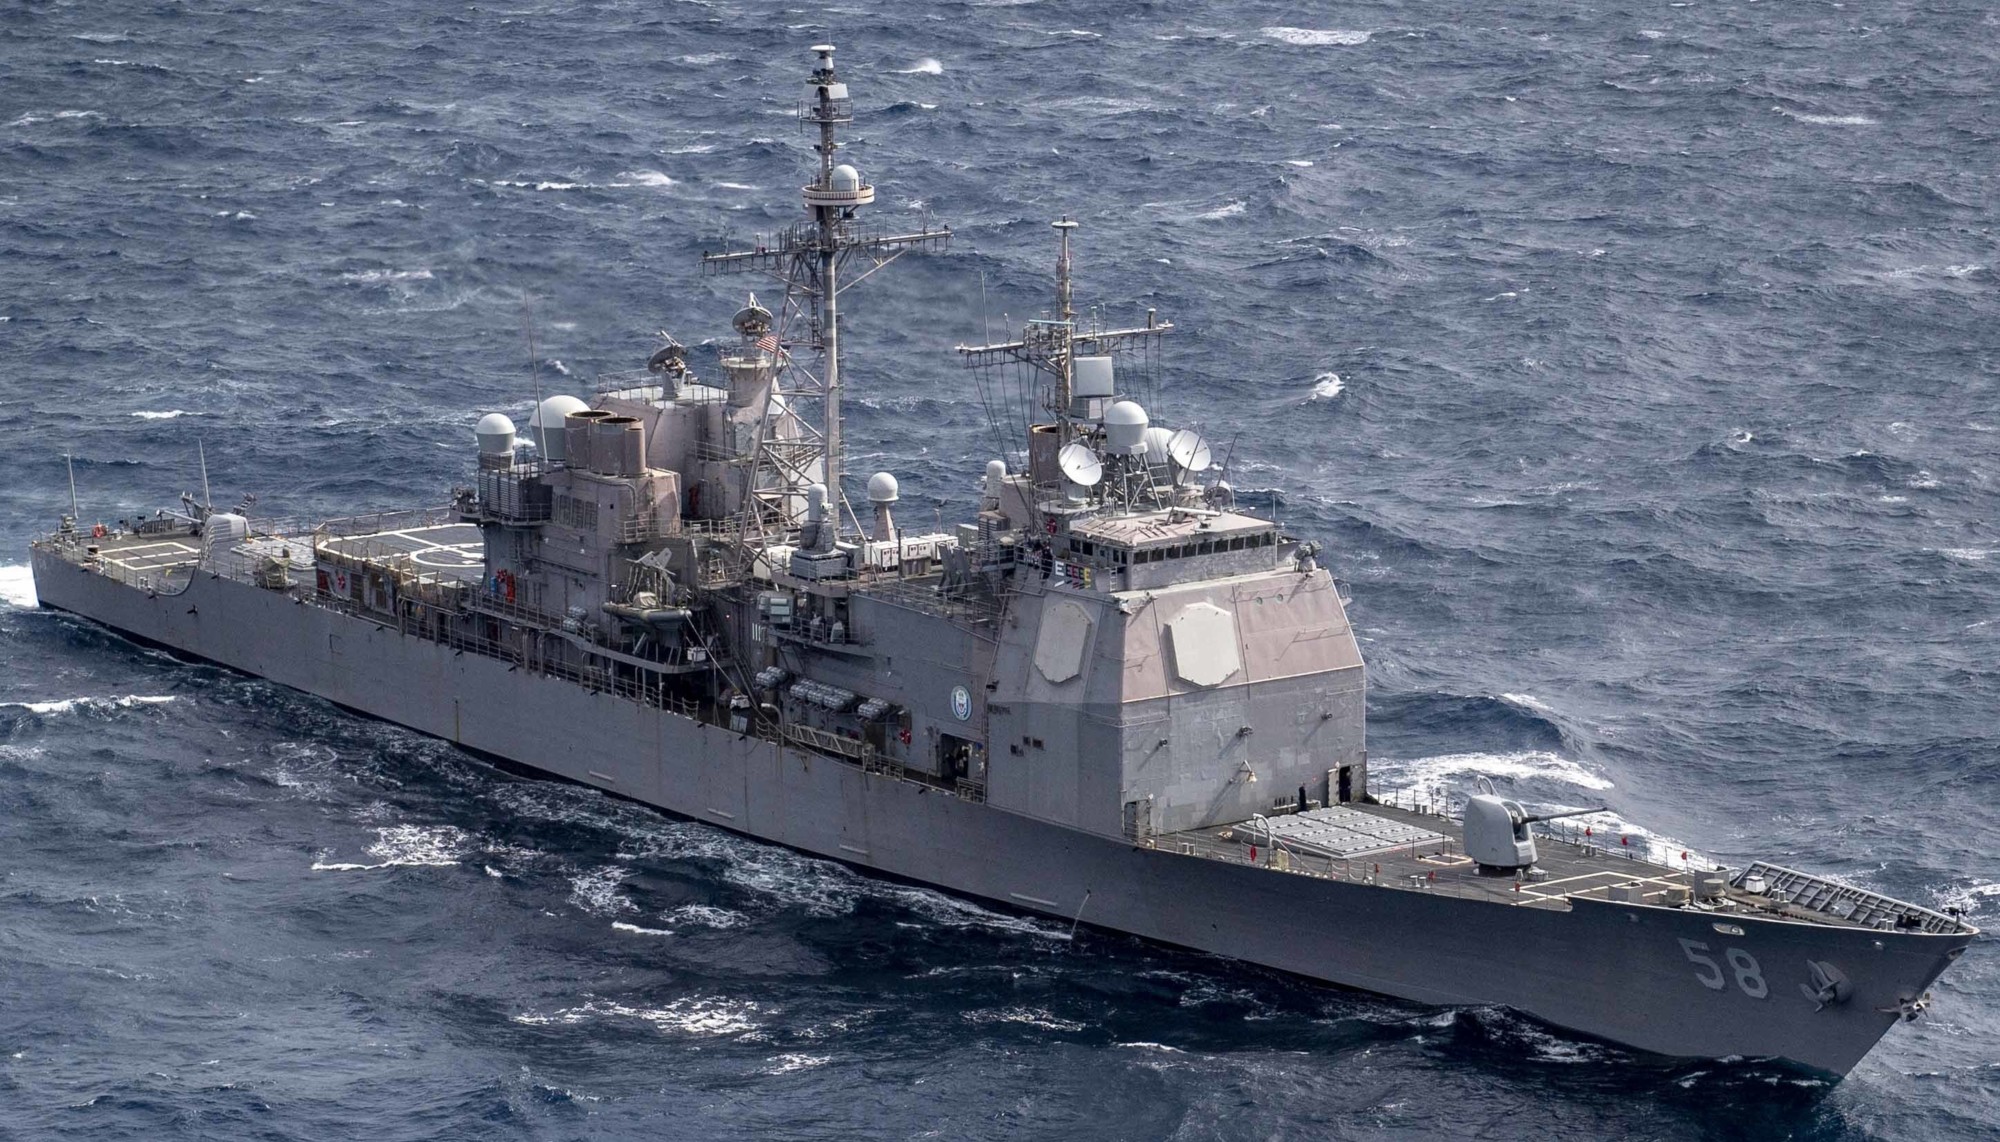 cg-58 uss philippine sea ticonderoga class guided missile cruiser aegis us navy atlantic ocean 54